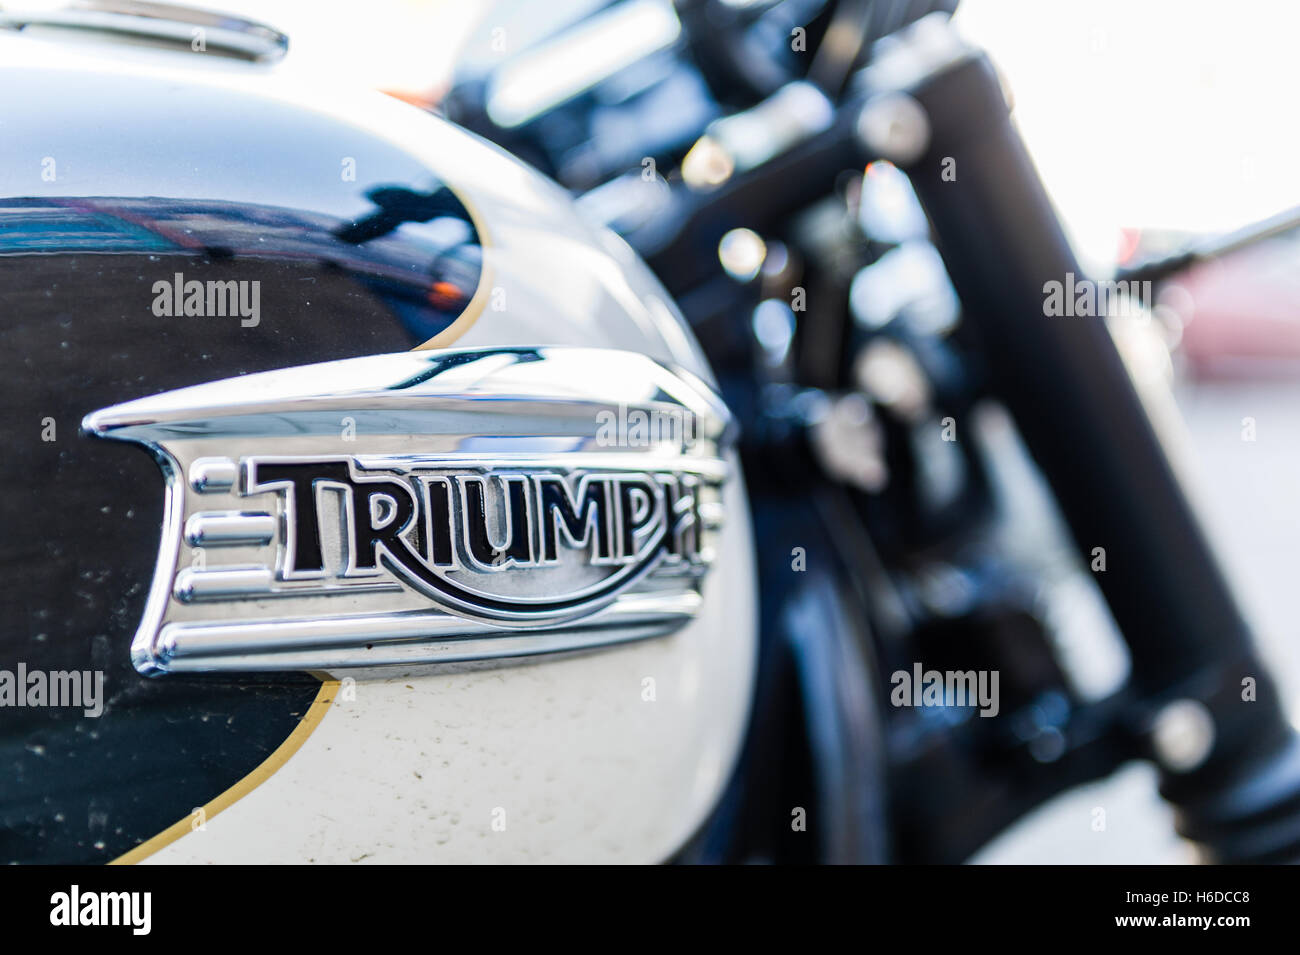 Triumph motorbike logo immagini e fotografie stock ad alta risoluzione -  Alamy